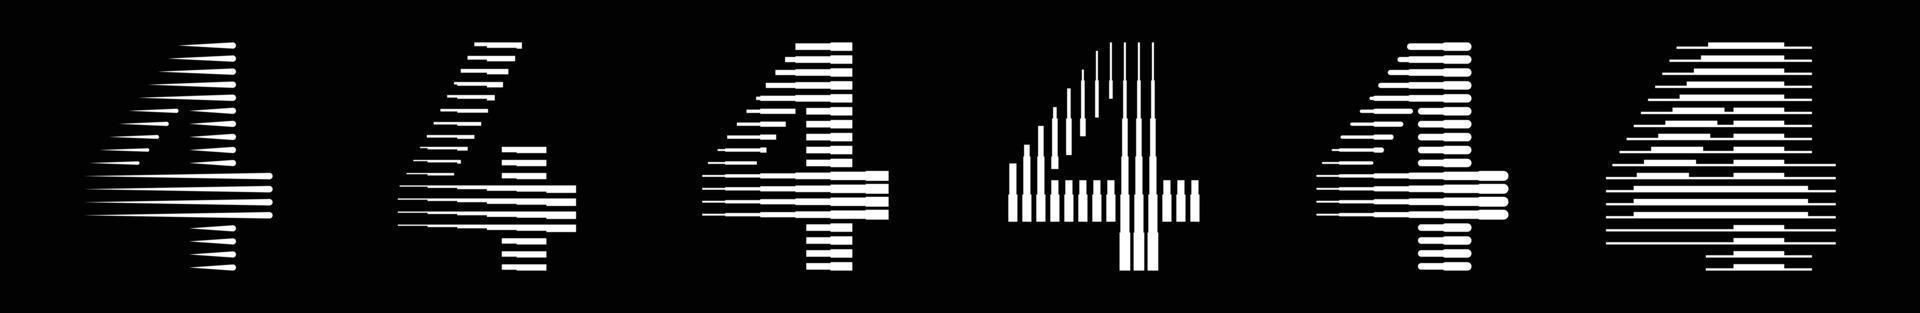 reeks getallen vier 4 logo lijnen abstract modern kunst vector illustratie